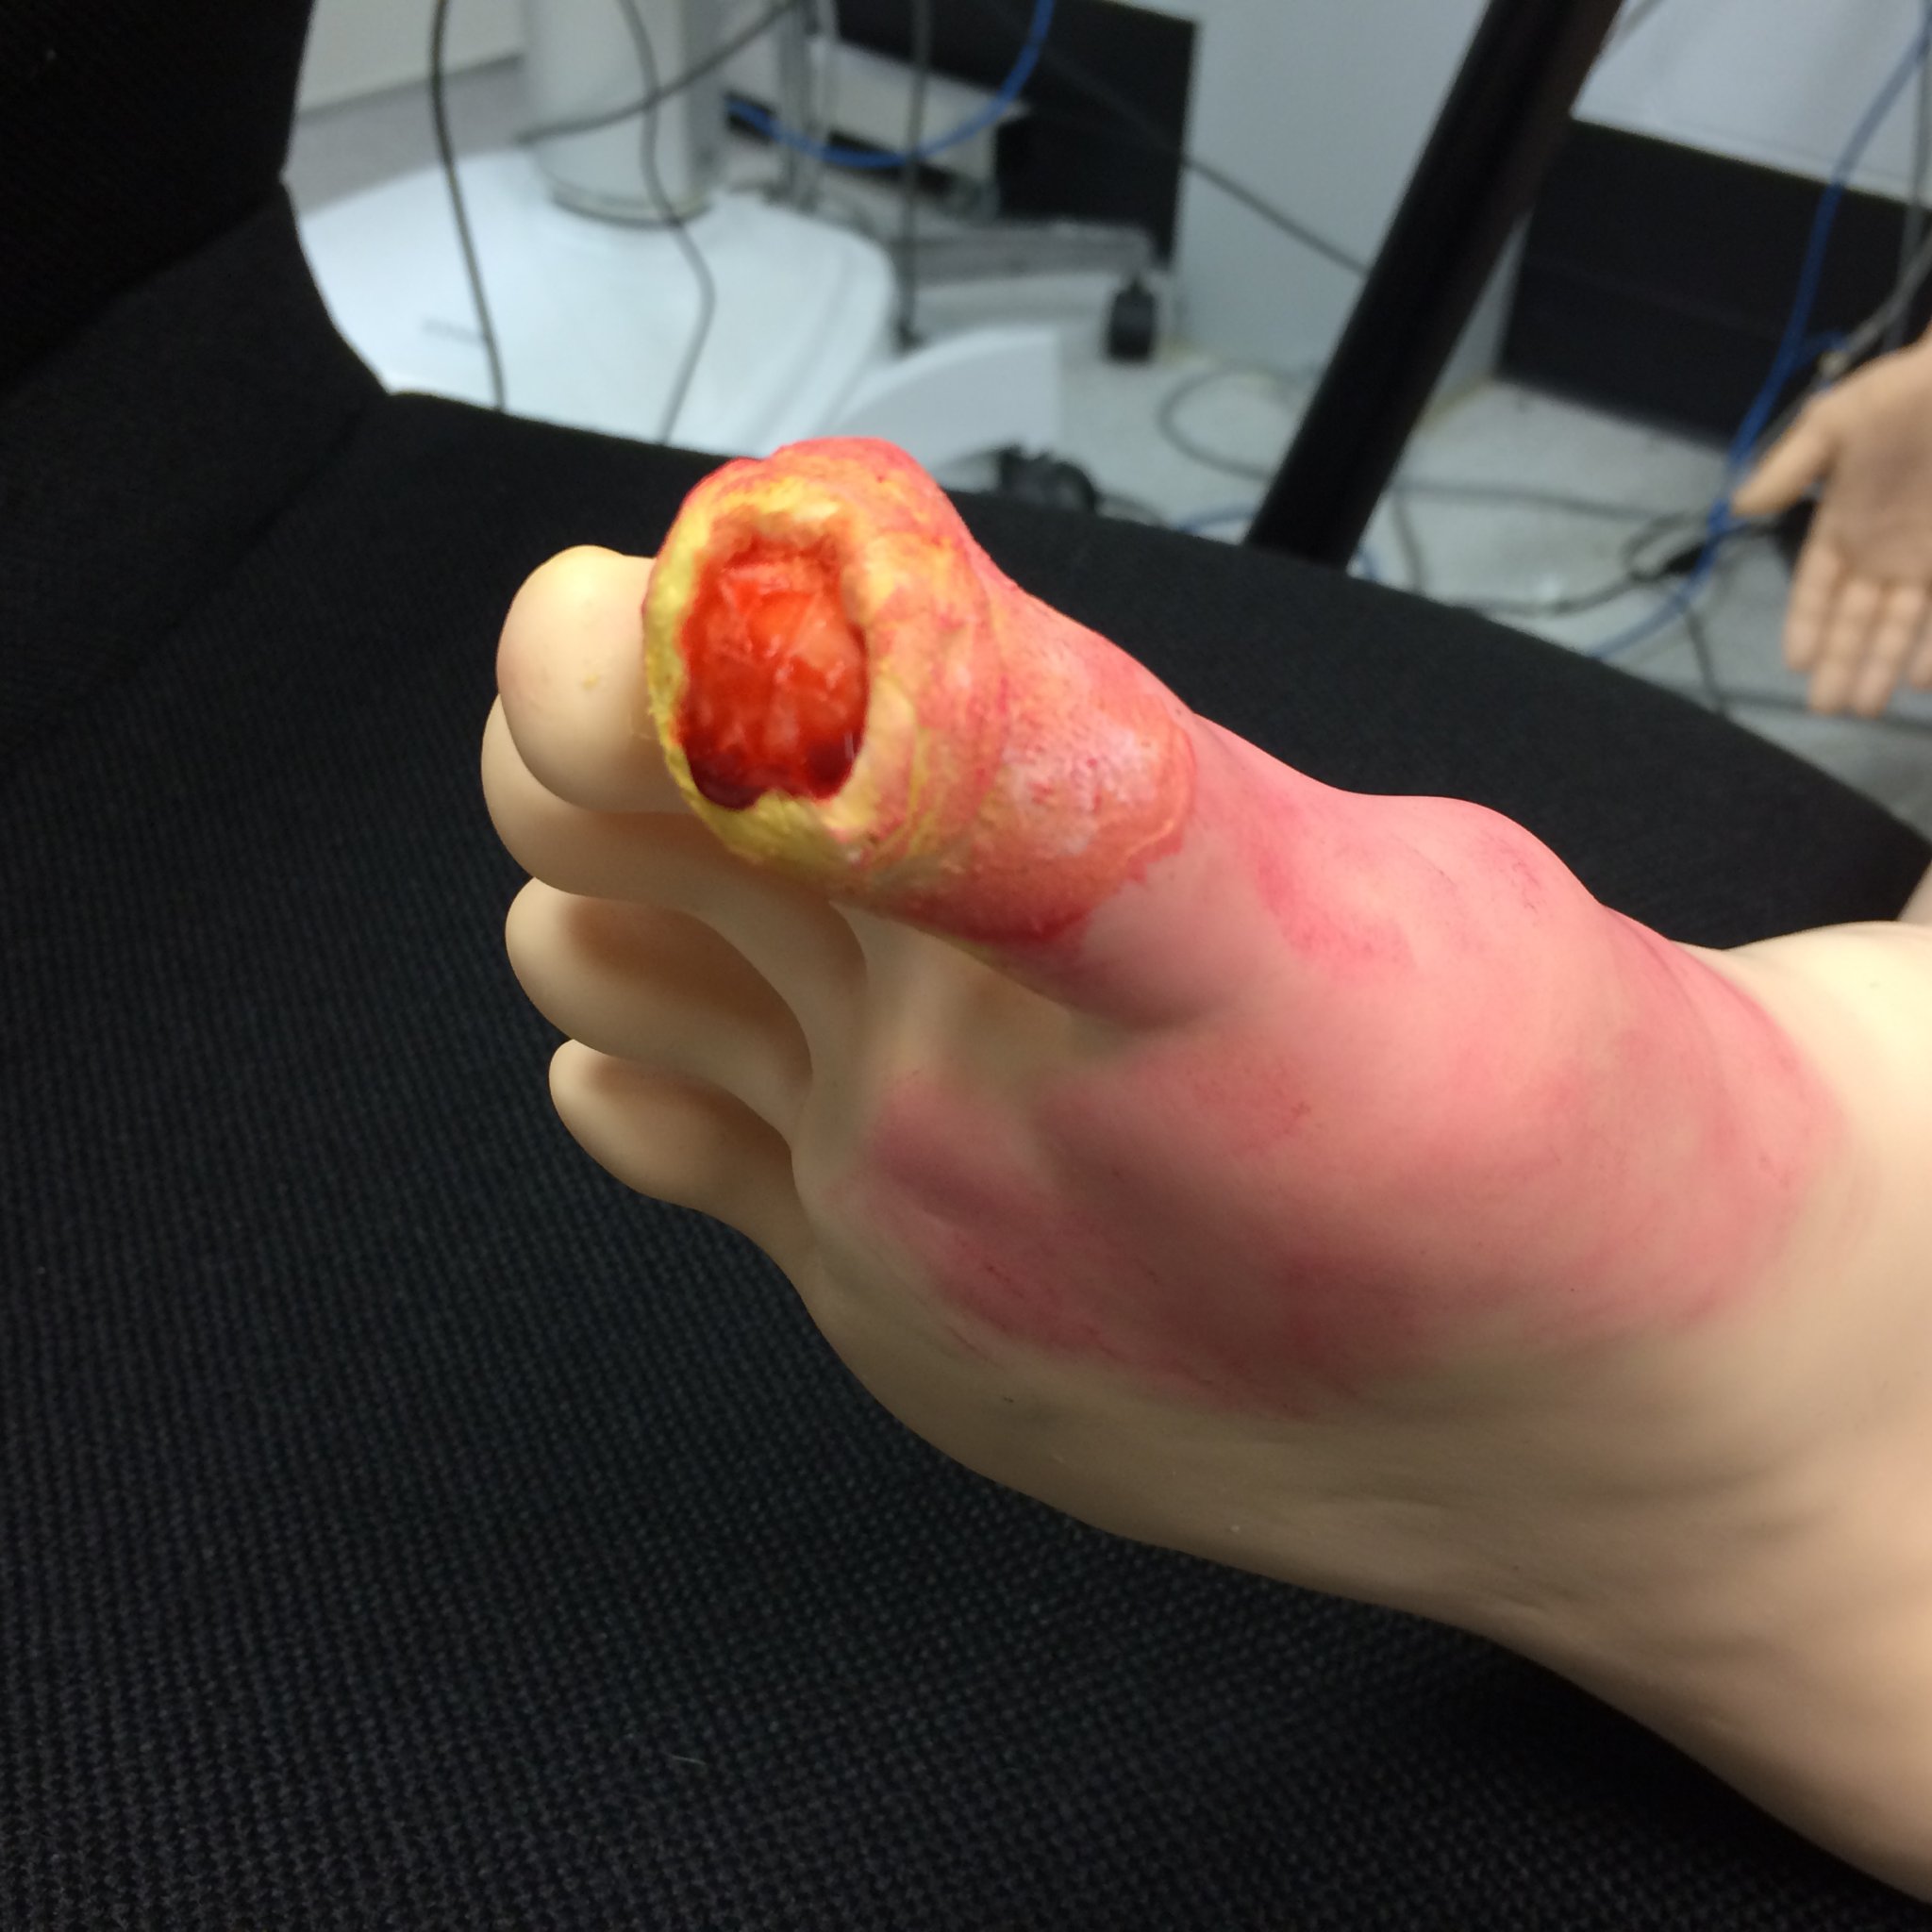 Mock toe injury moulage